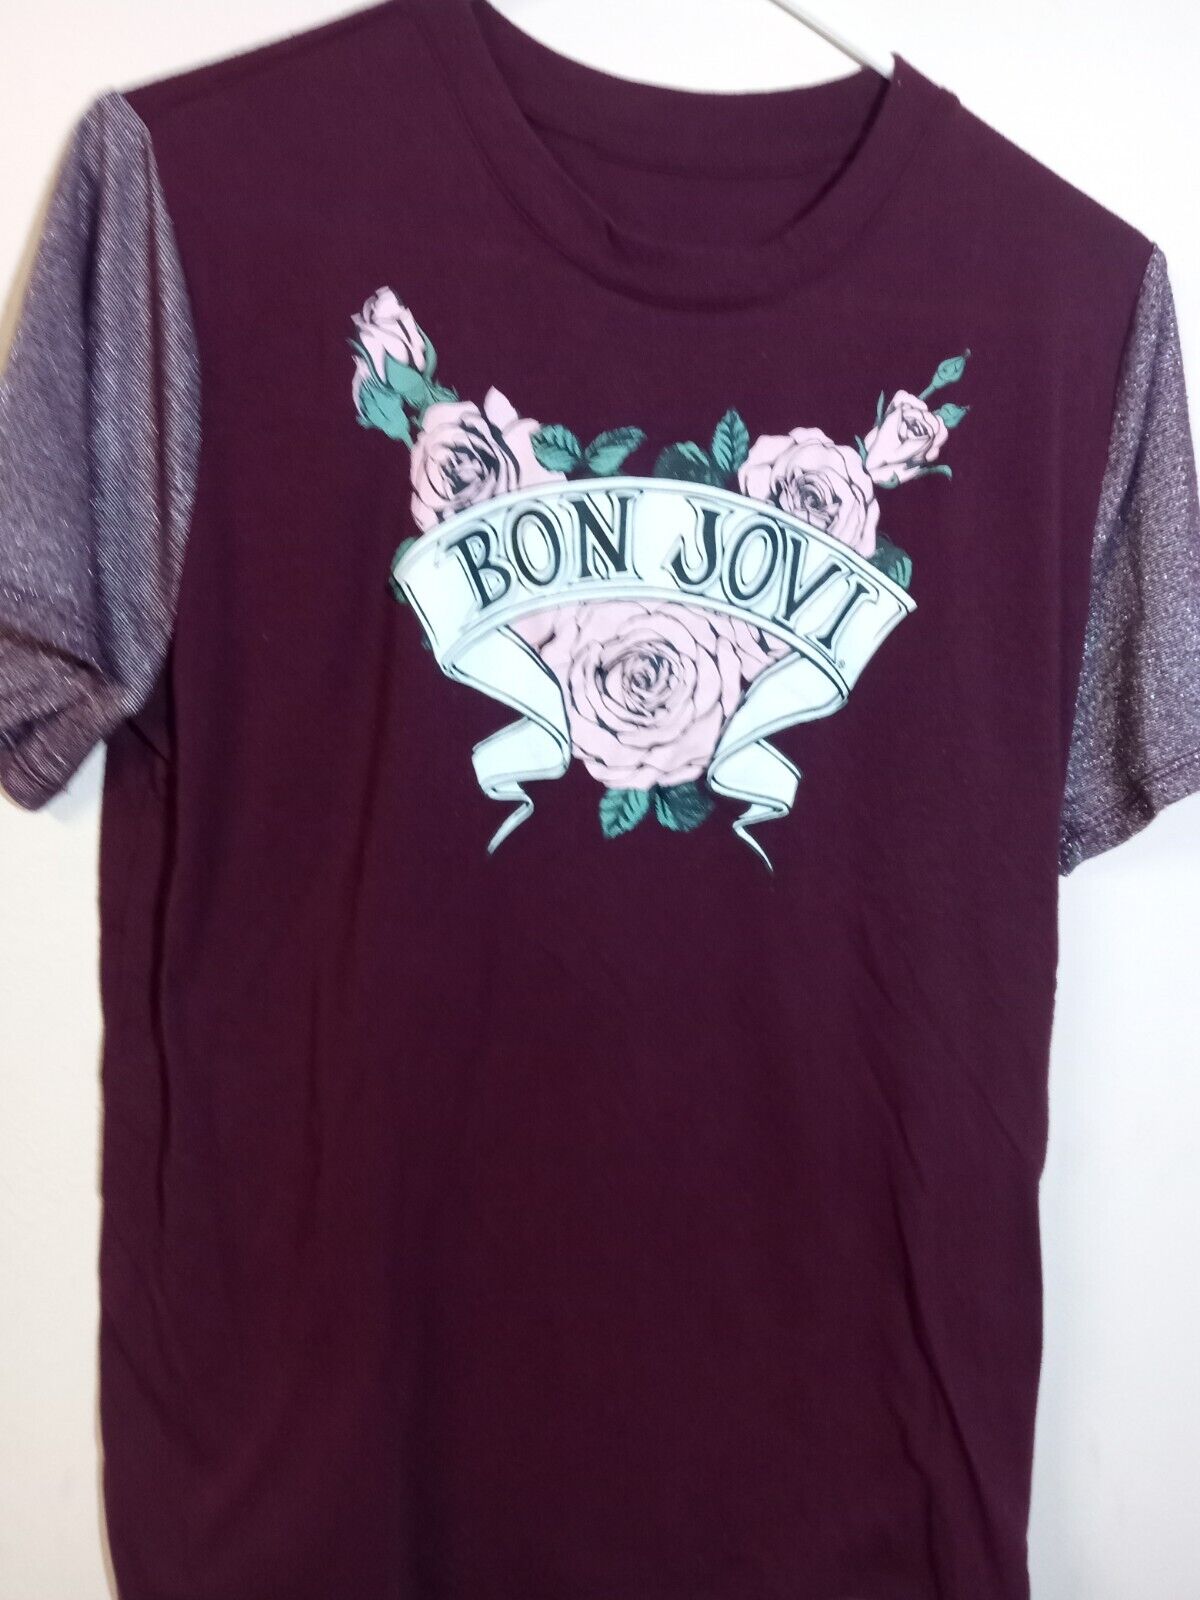 Bon Jovi Concert Adult Size Large T-shirt - C82